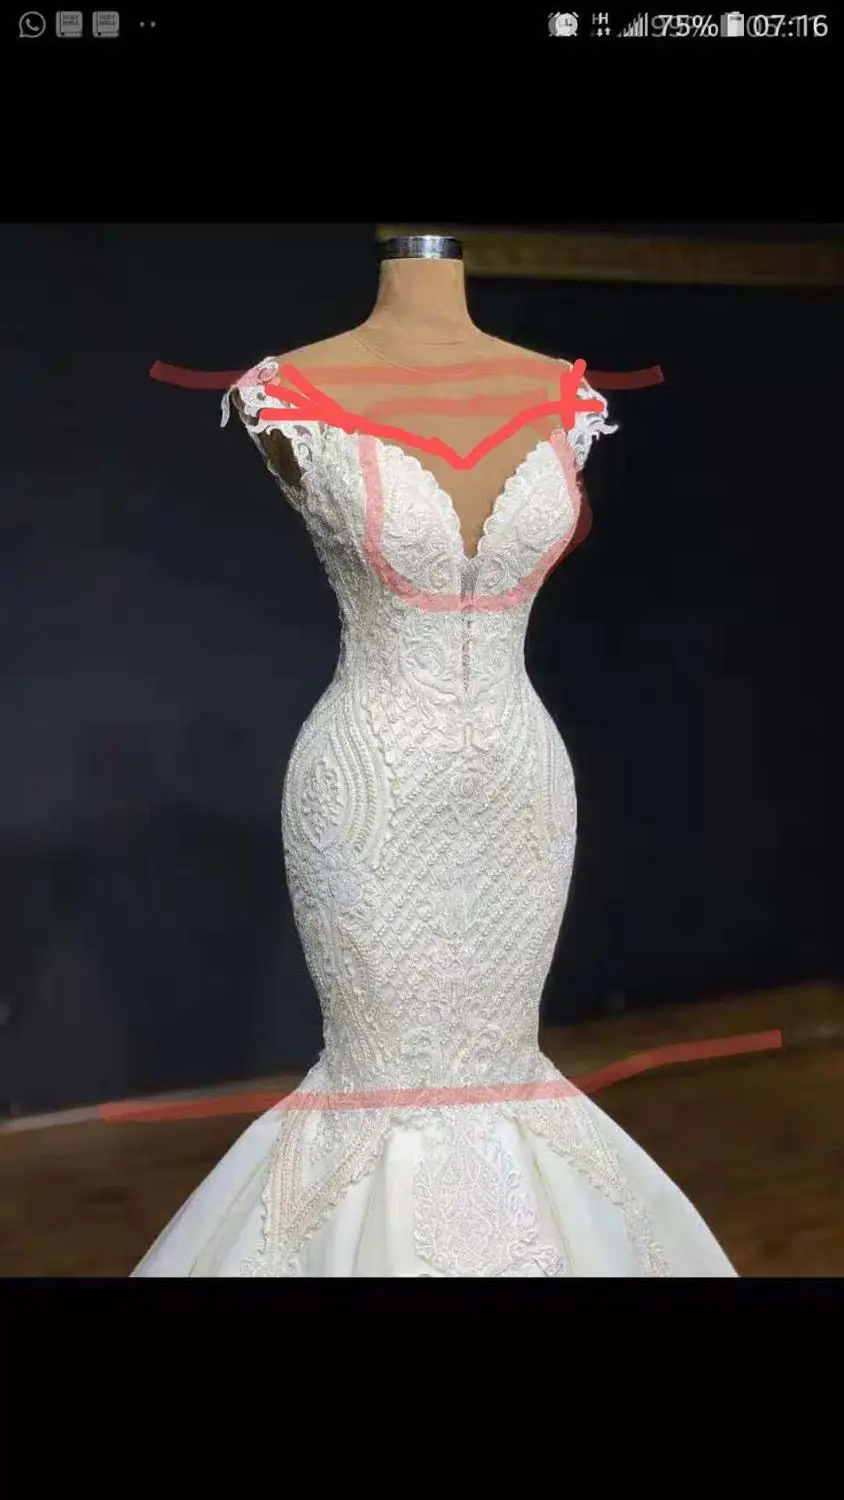 Свадебное платье русалки с бисером и шнуровкой на спине, свадебное платье с длинным шлейфом и короткими рукавами, свадебное платье, vestido de noiva